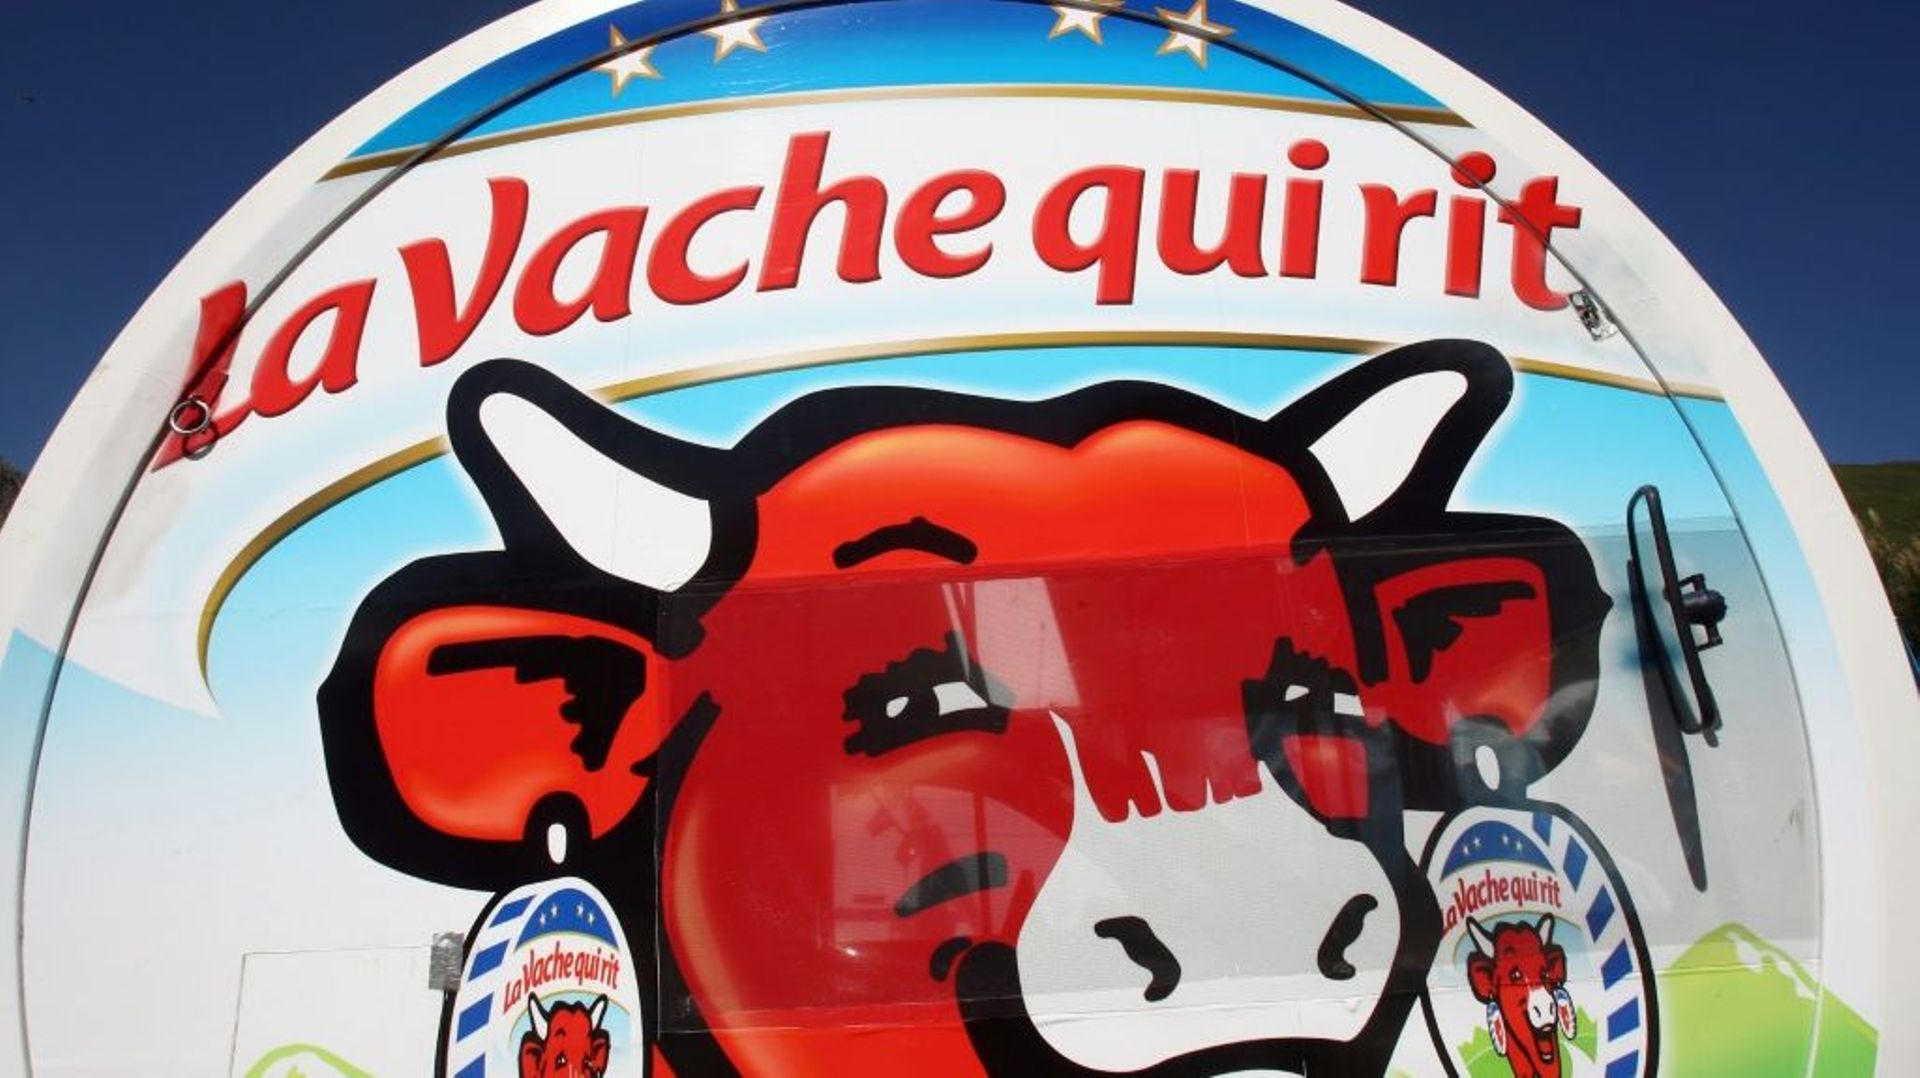 L'entreprise qui fabrique La Vache qui rit a été fondée en 1865 dans le Jura